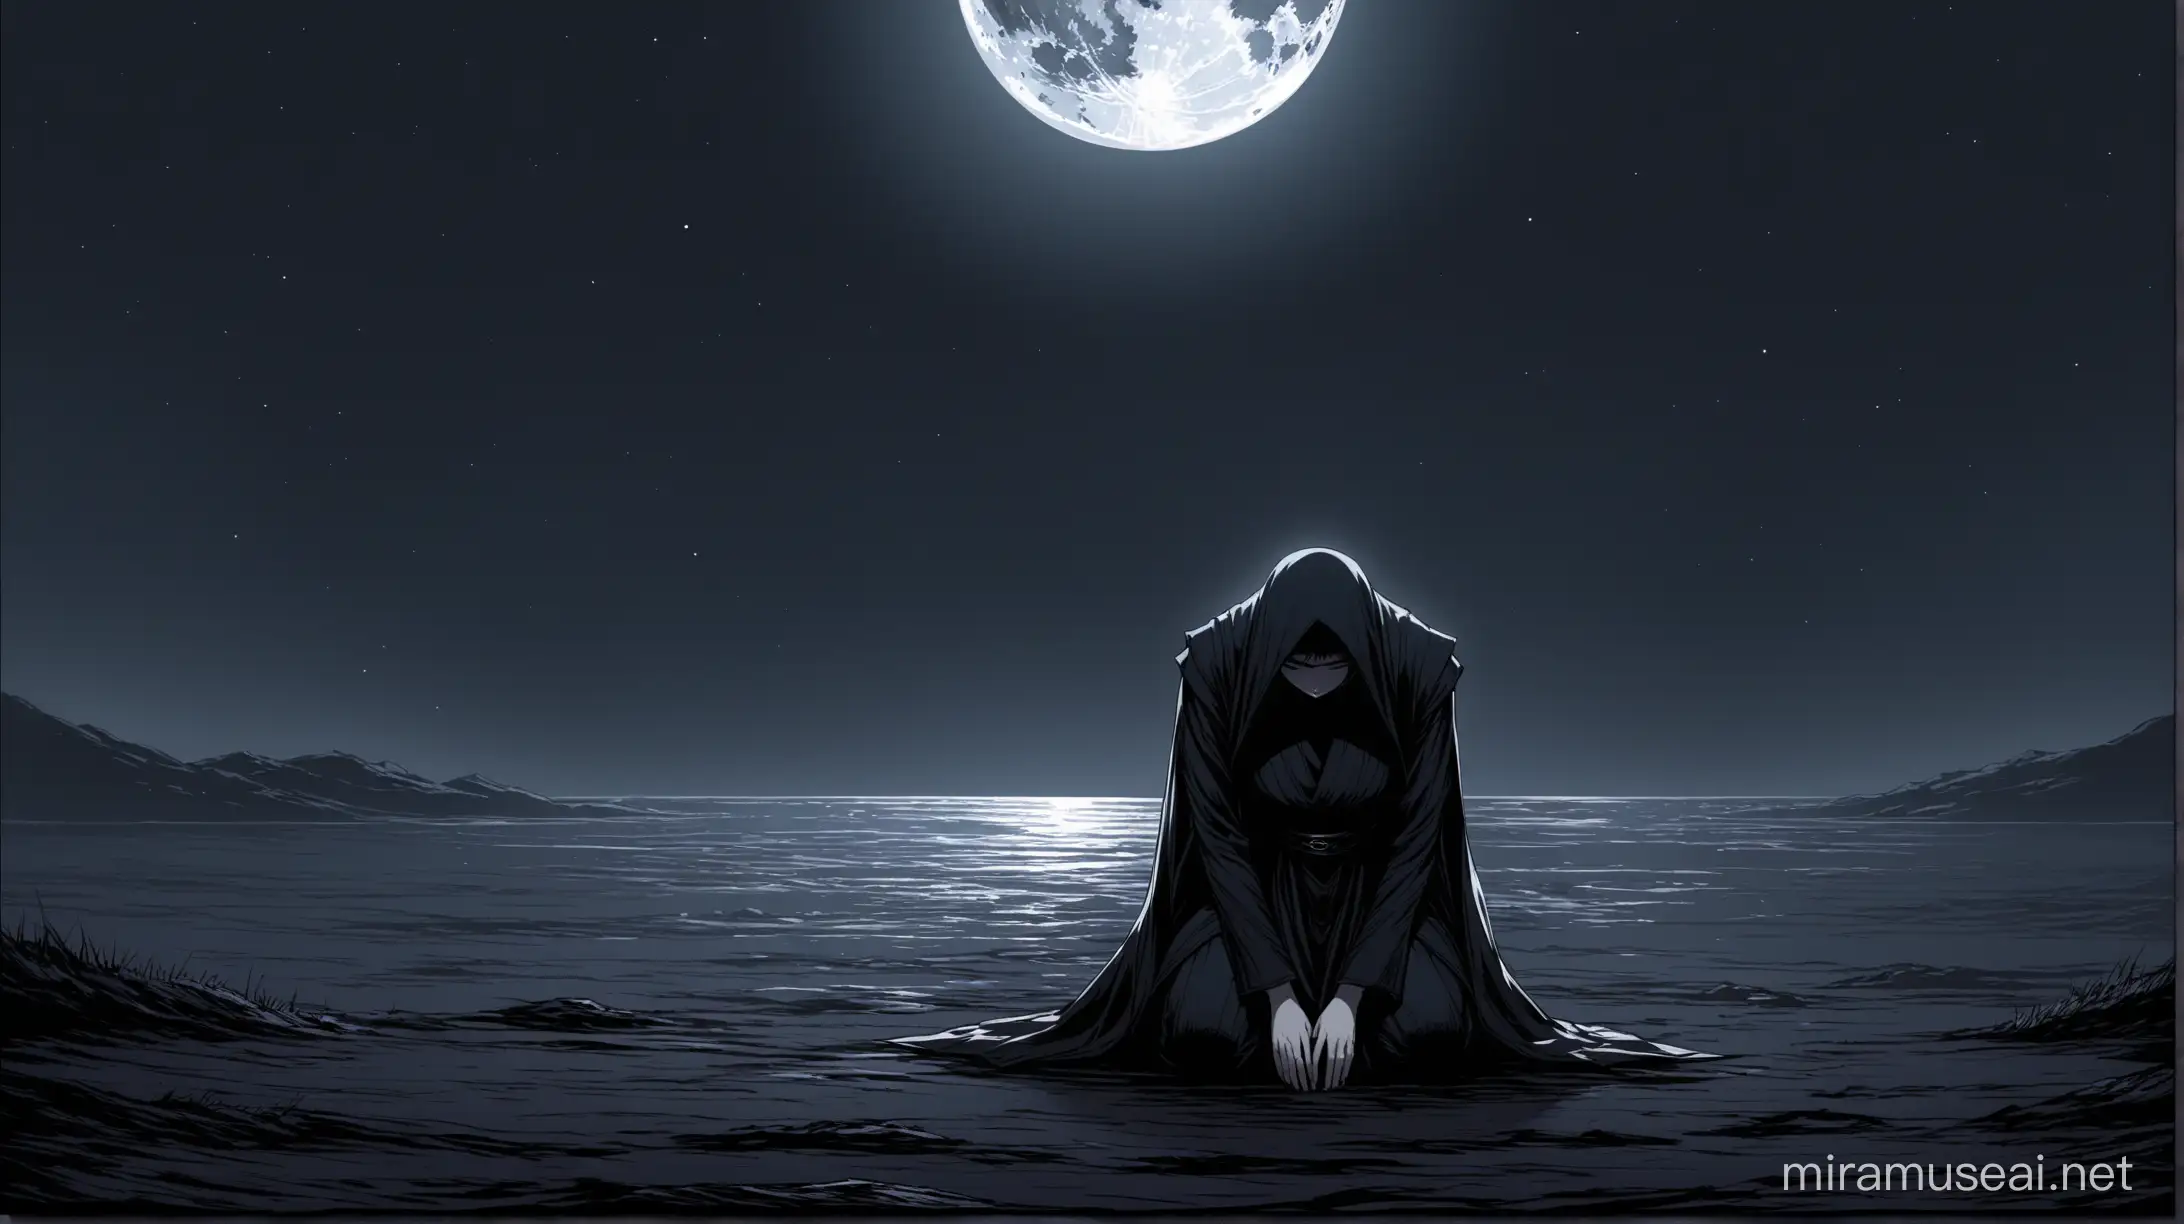 Moonlit Figure Kneeling in Darkness